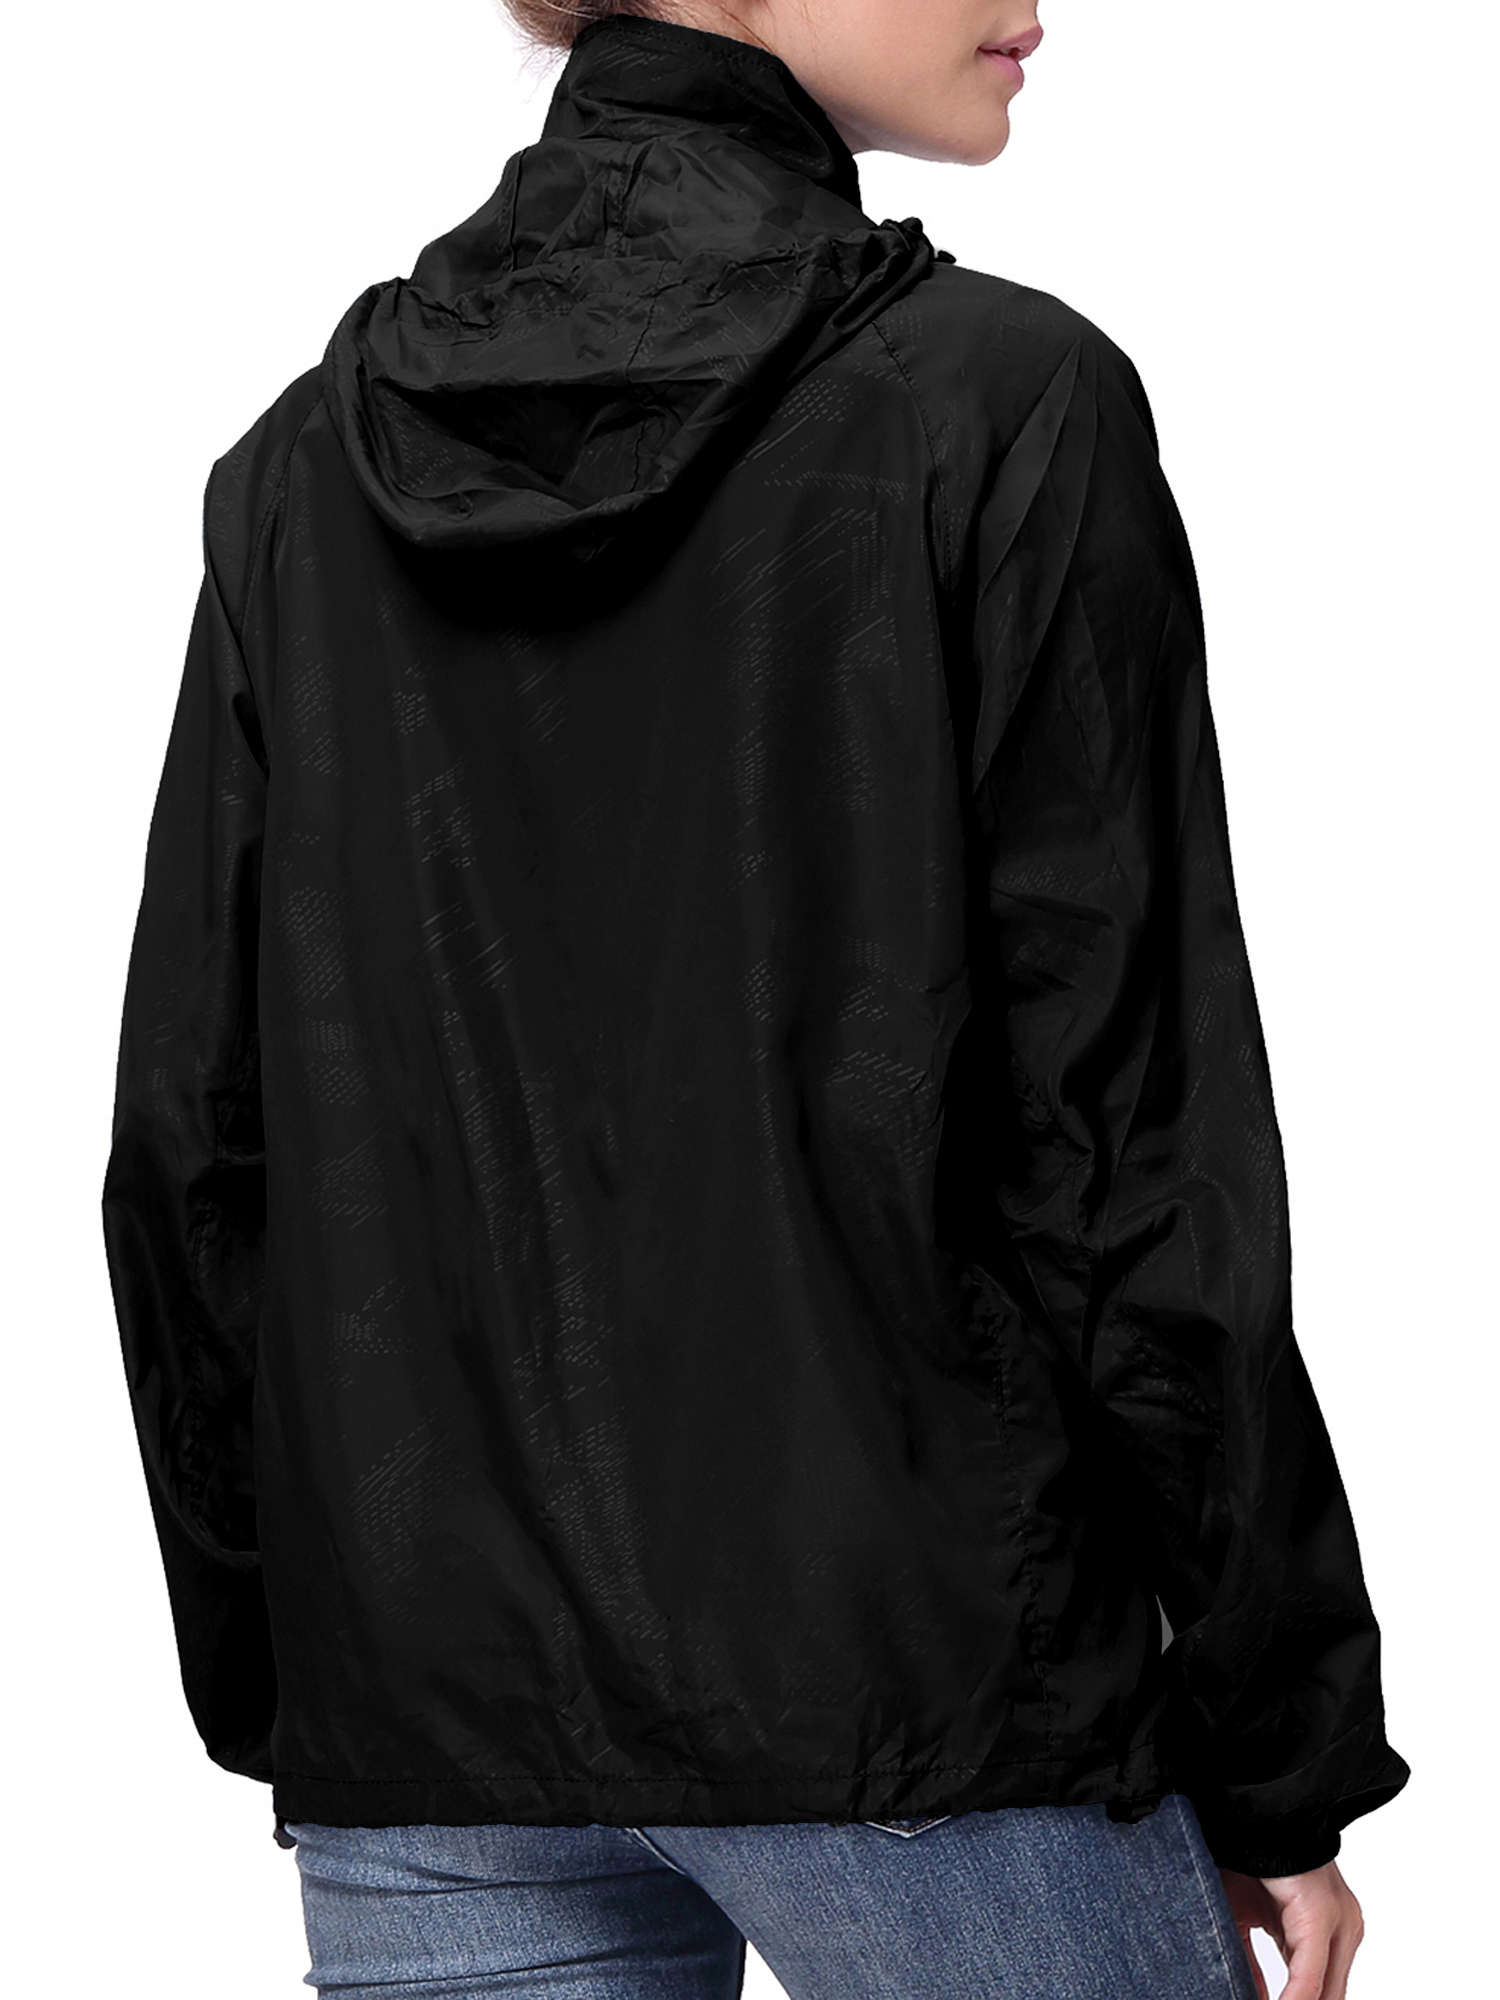 LELINTA Women Nylon Windbreaker Jacket Sport Casual Lightweight Zipper Hooded Outdoor Jacket, Black - image 3 of 9